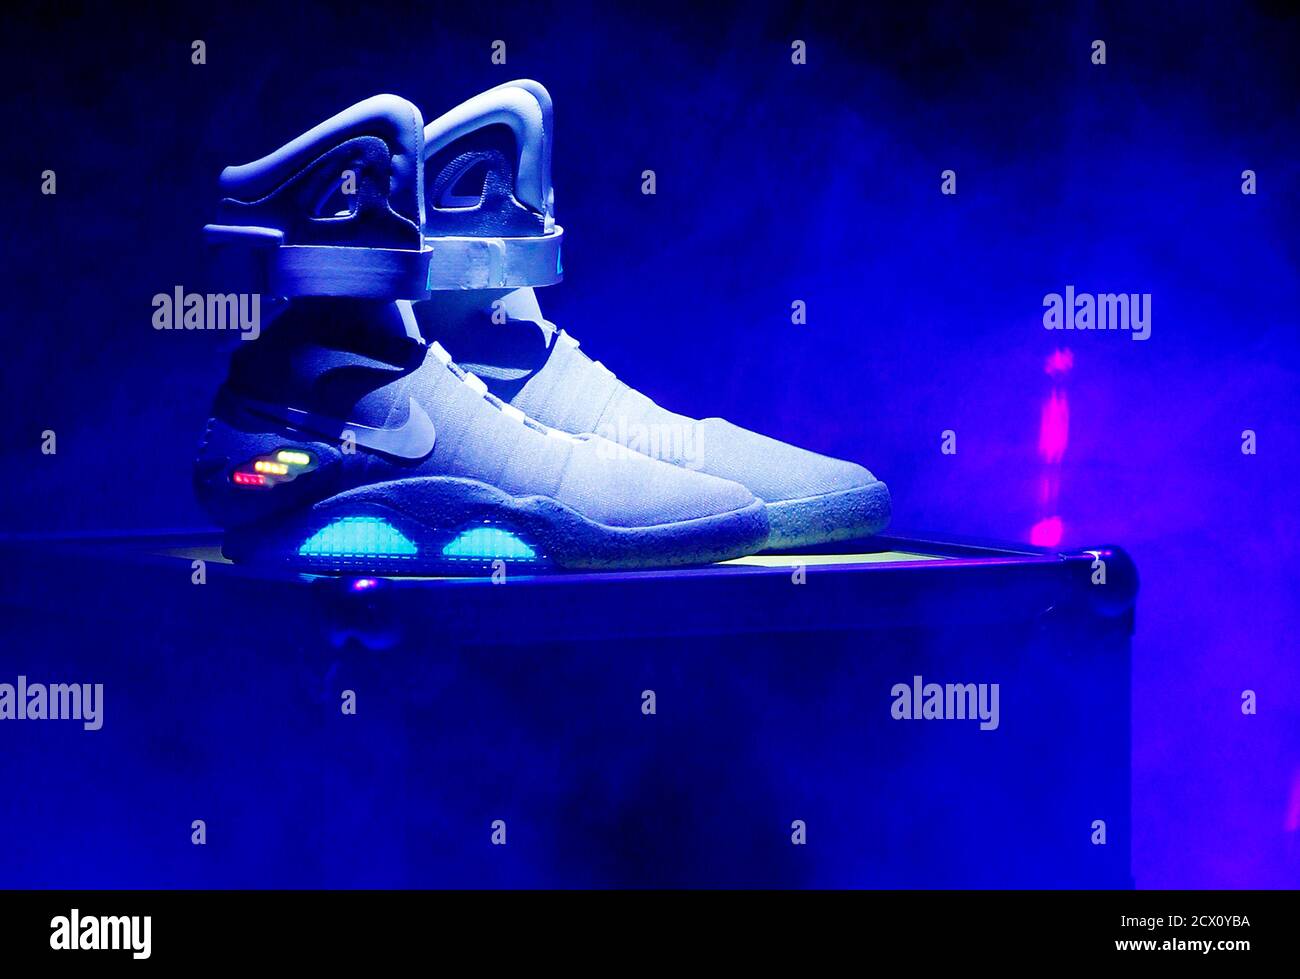 La chaussure Nike MAG 2011, basée sur la chaussure Nike MAG originale  portée en 2015 par le personnage « Back to the future » Marty McFly, joué  par Michael J. Fox, est